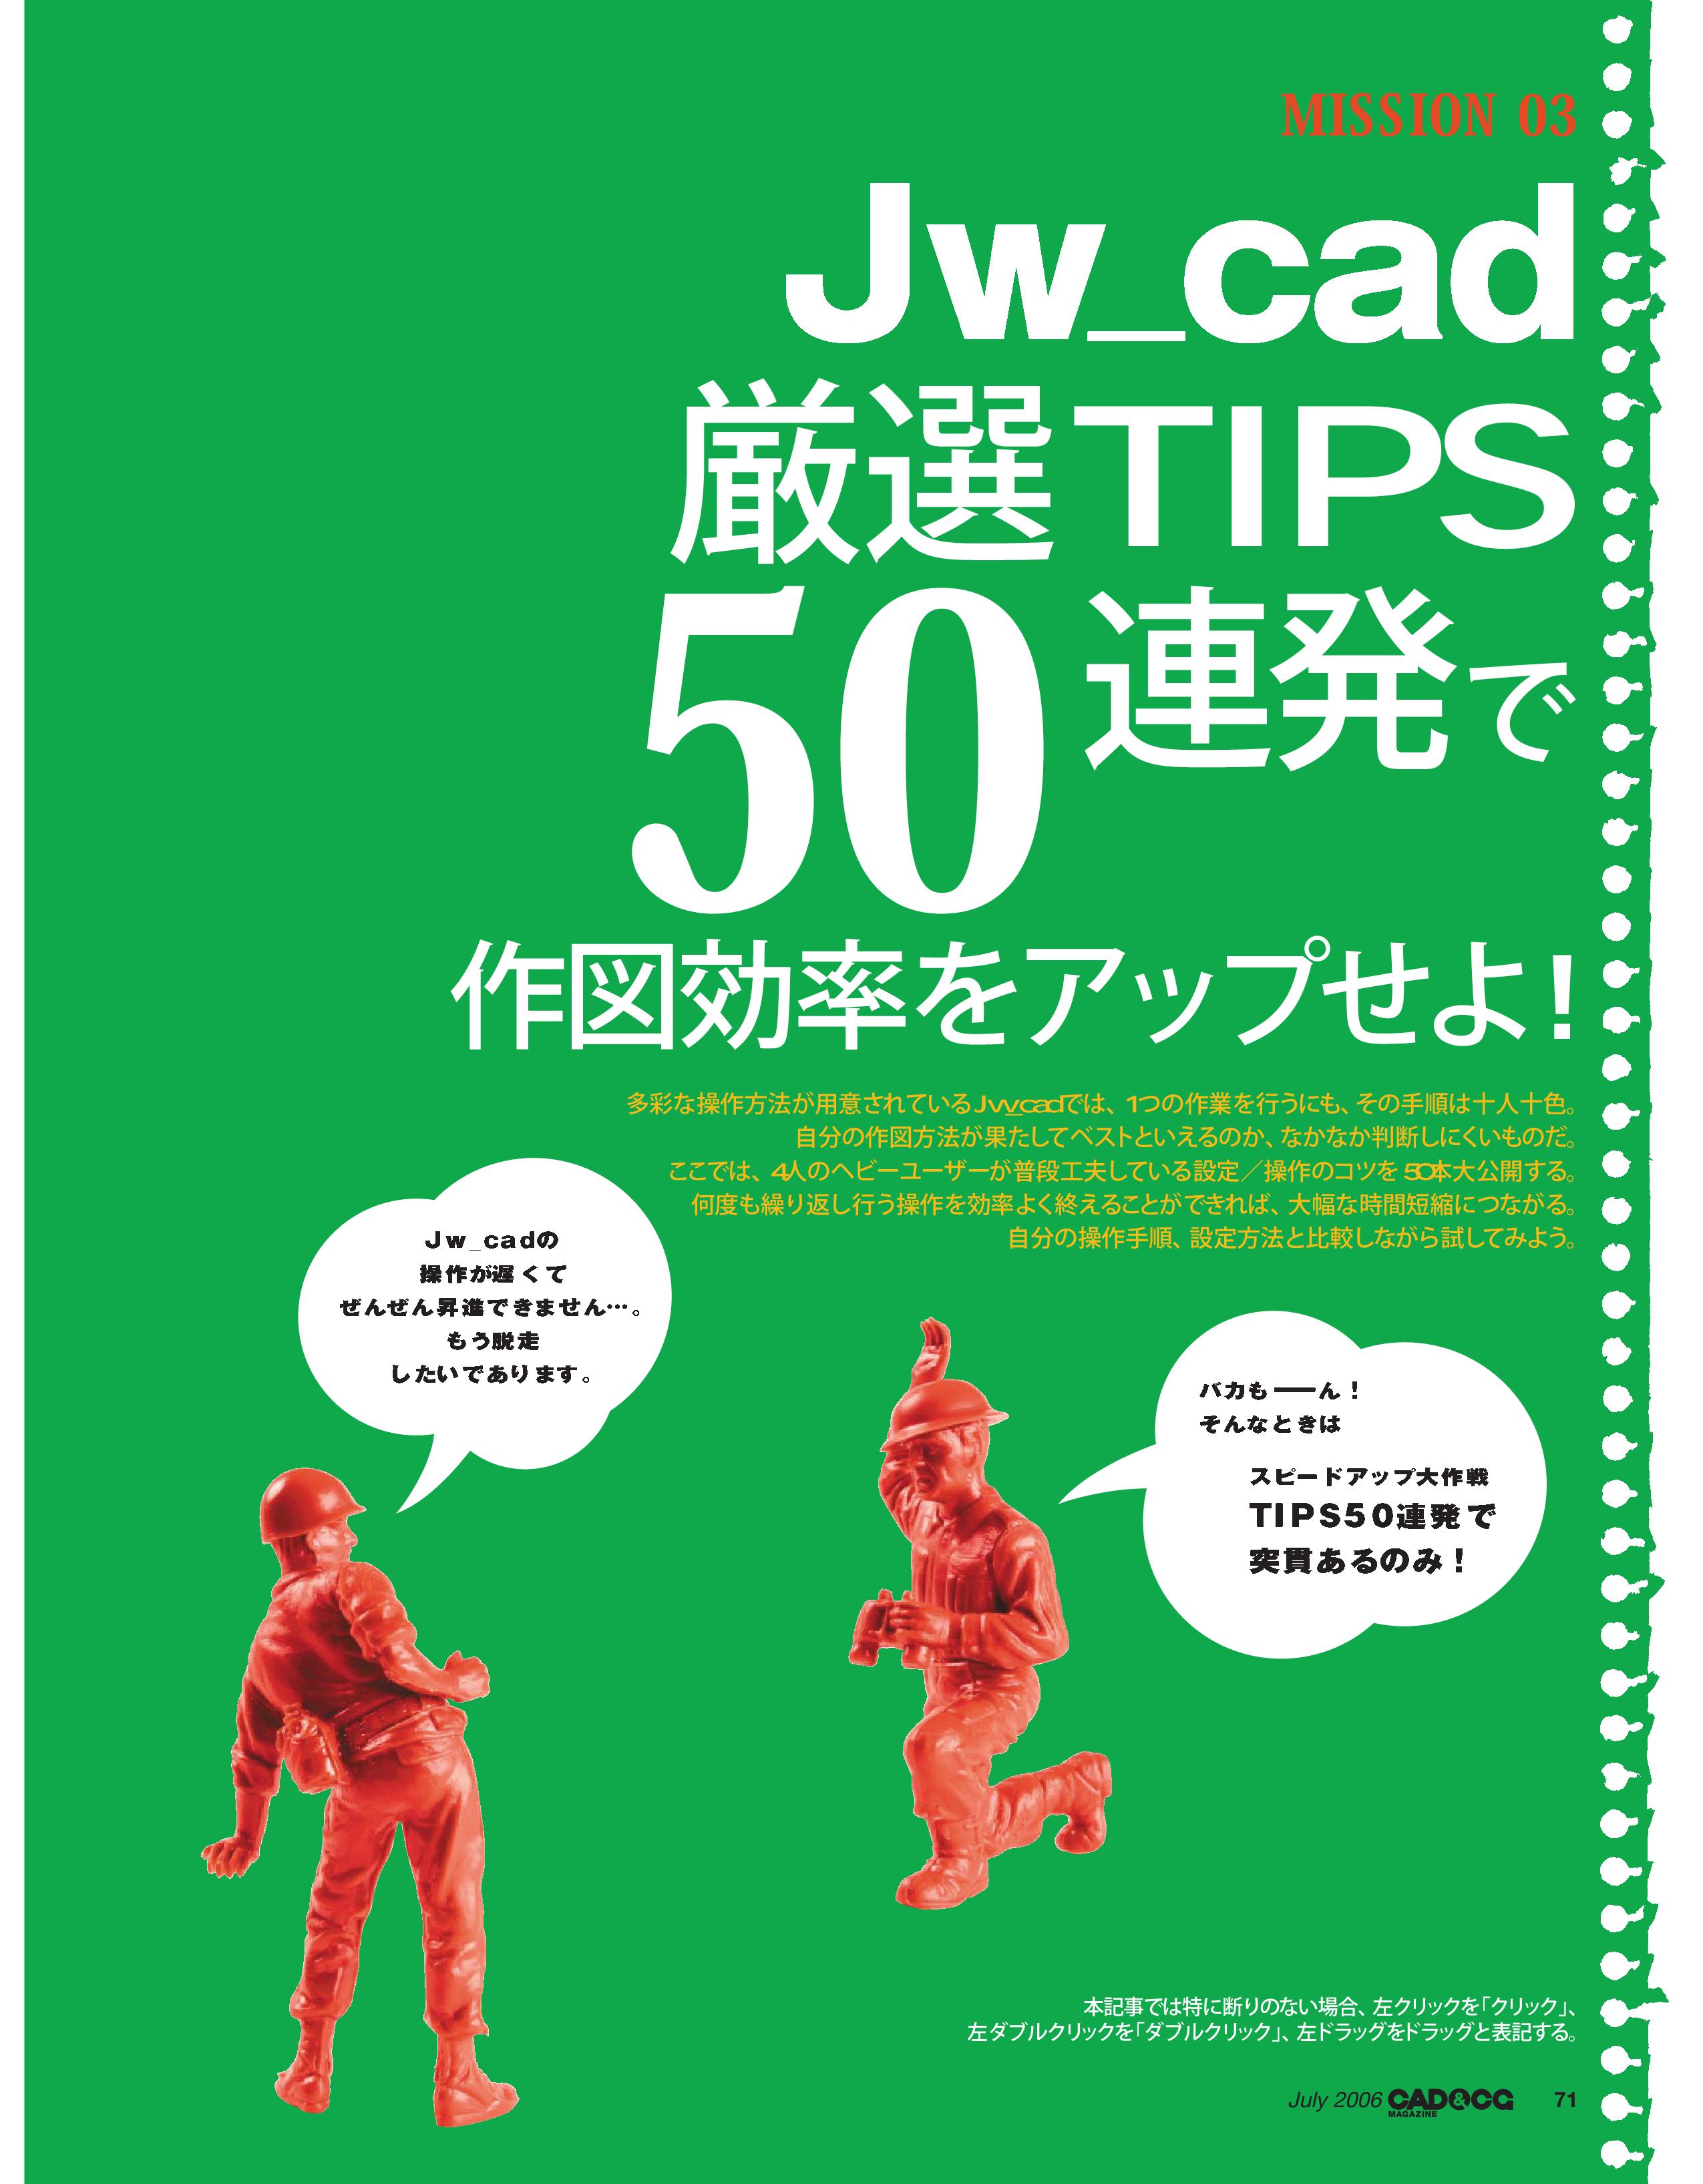 厳選tips50連発 Jw Cad Sketchup Inkscape Gimpの講習 横浜cad設計です オンラインレッスン フリーソフトでコスト削減業務を提案します